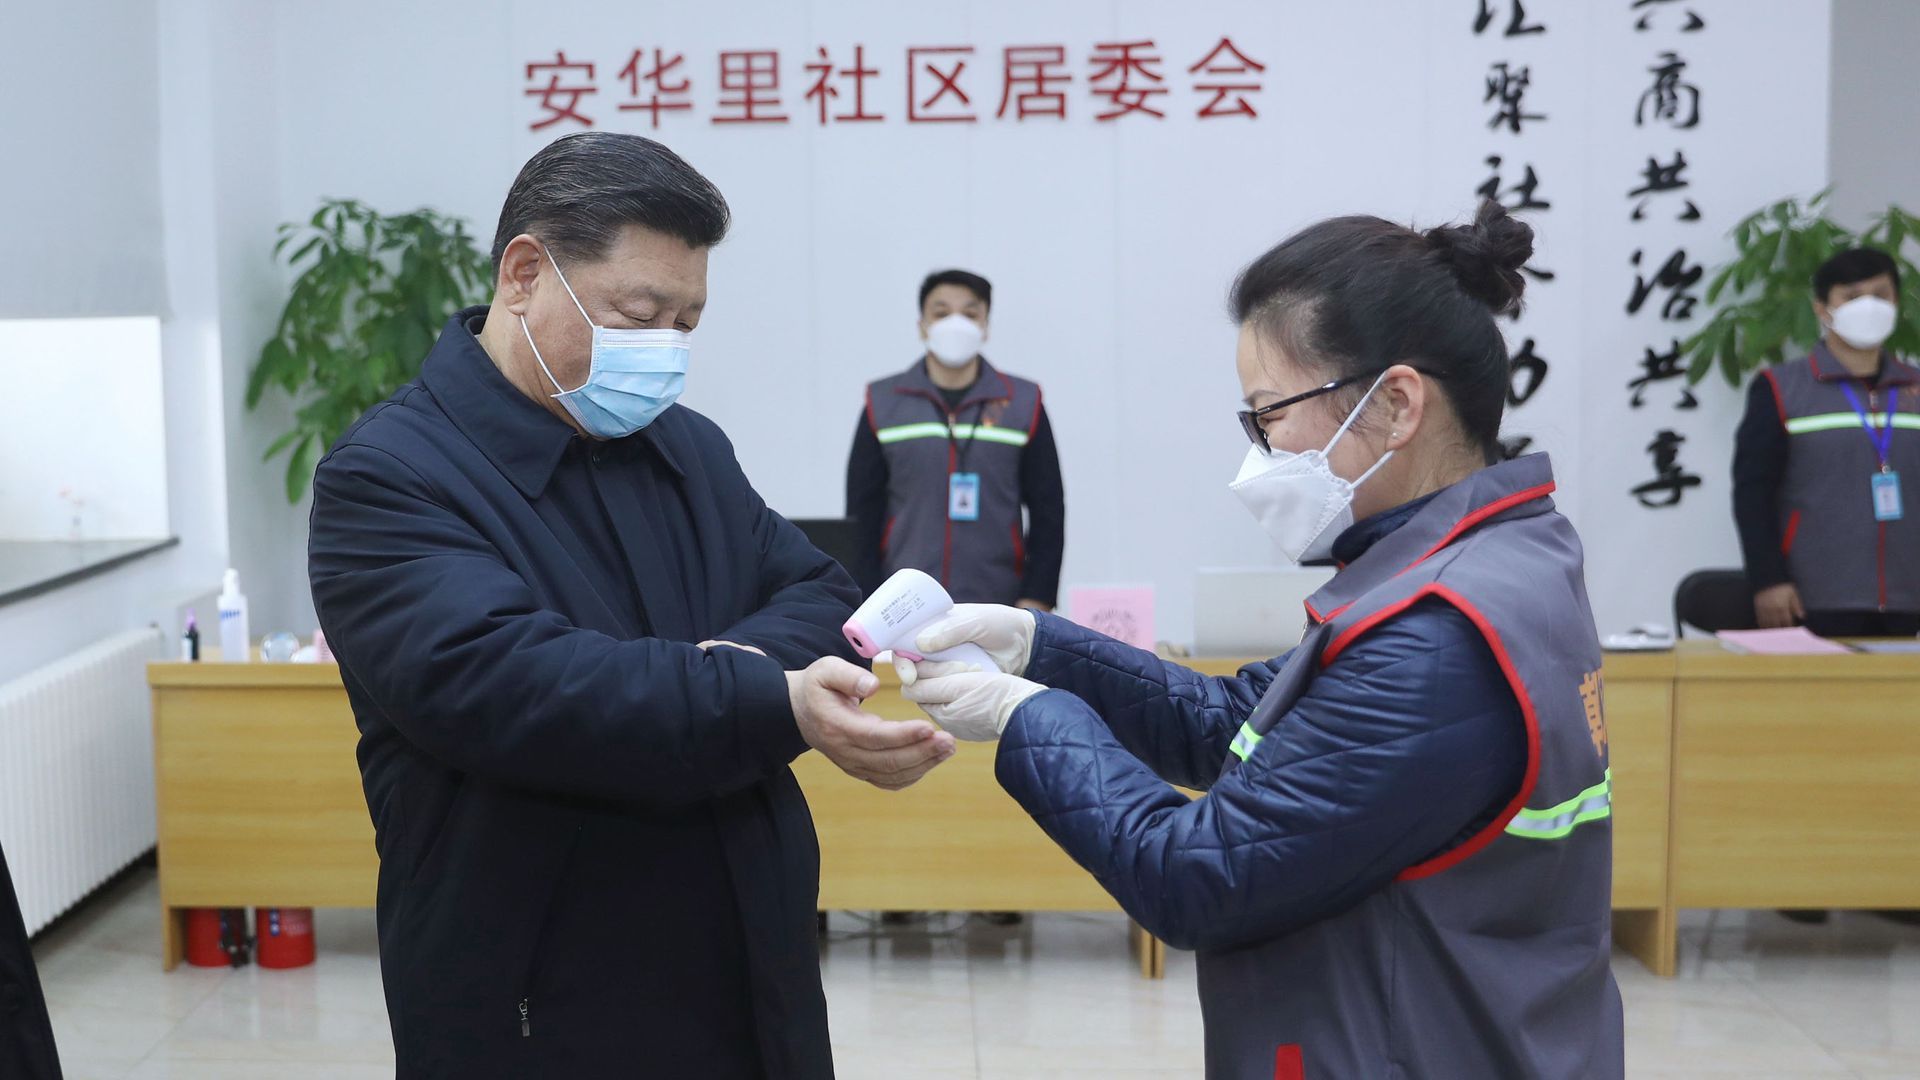 JD x Alibaba จับมือสู้ COVID-19 ประกาศจ้างงานชั่วคราวสำหรับผู้ตกงานกว่า 20,000 ตำแหน่ง